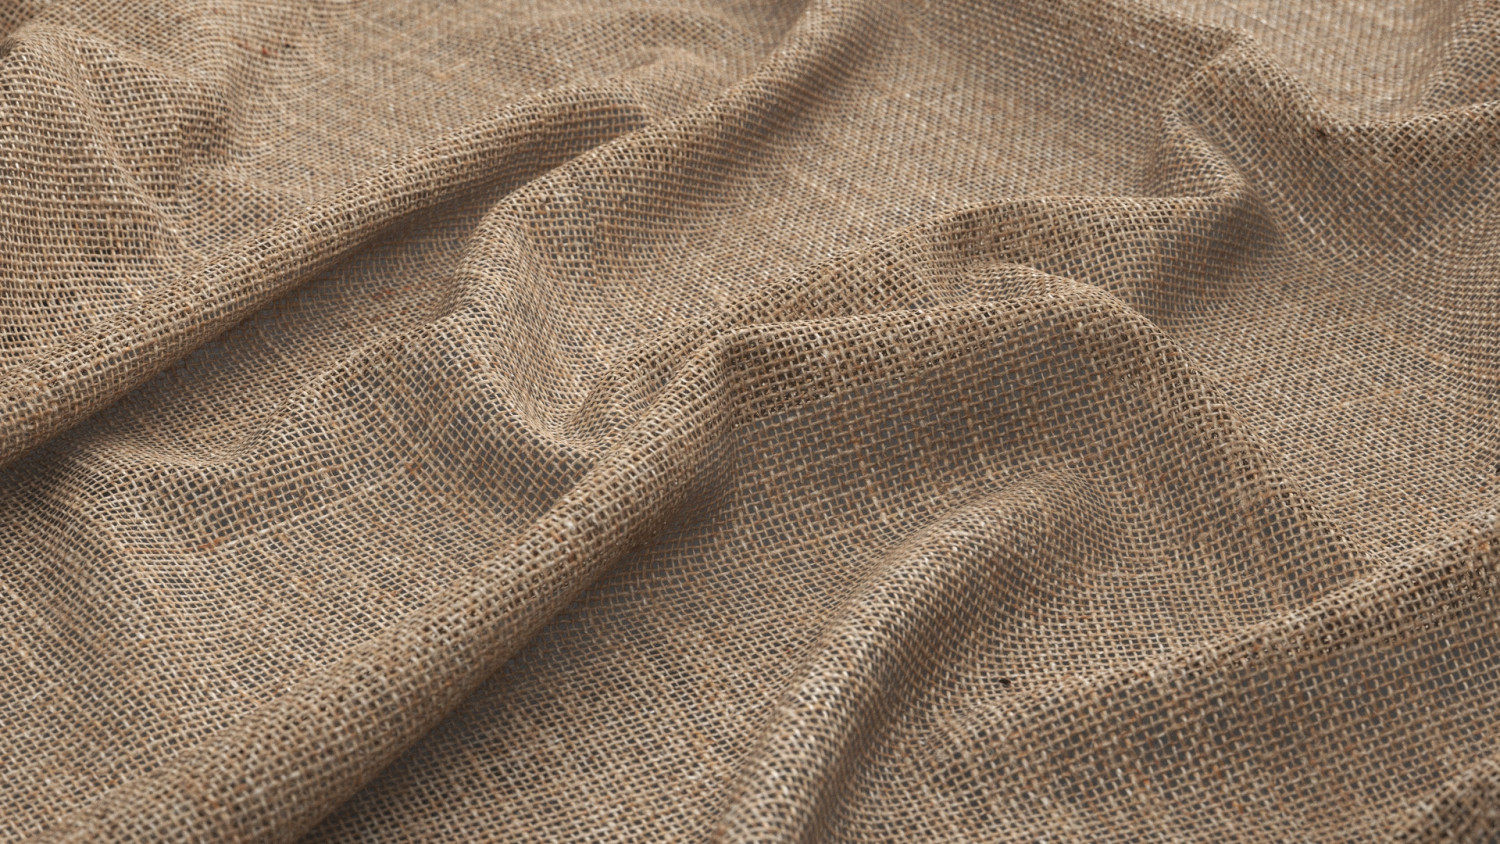 Burlap fabric texture